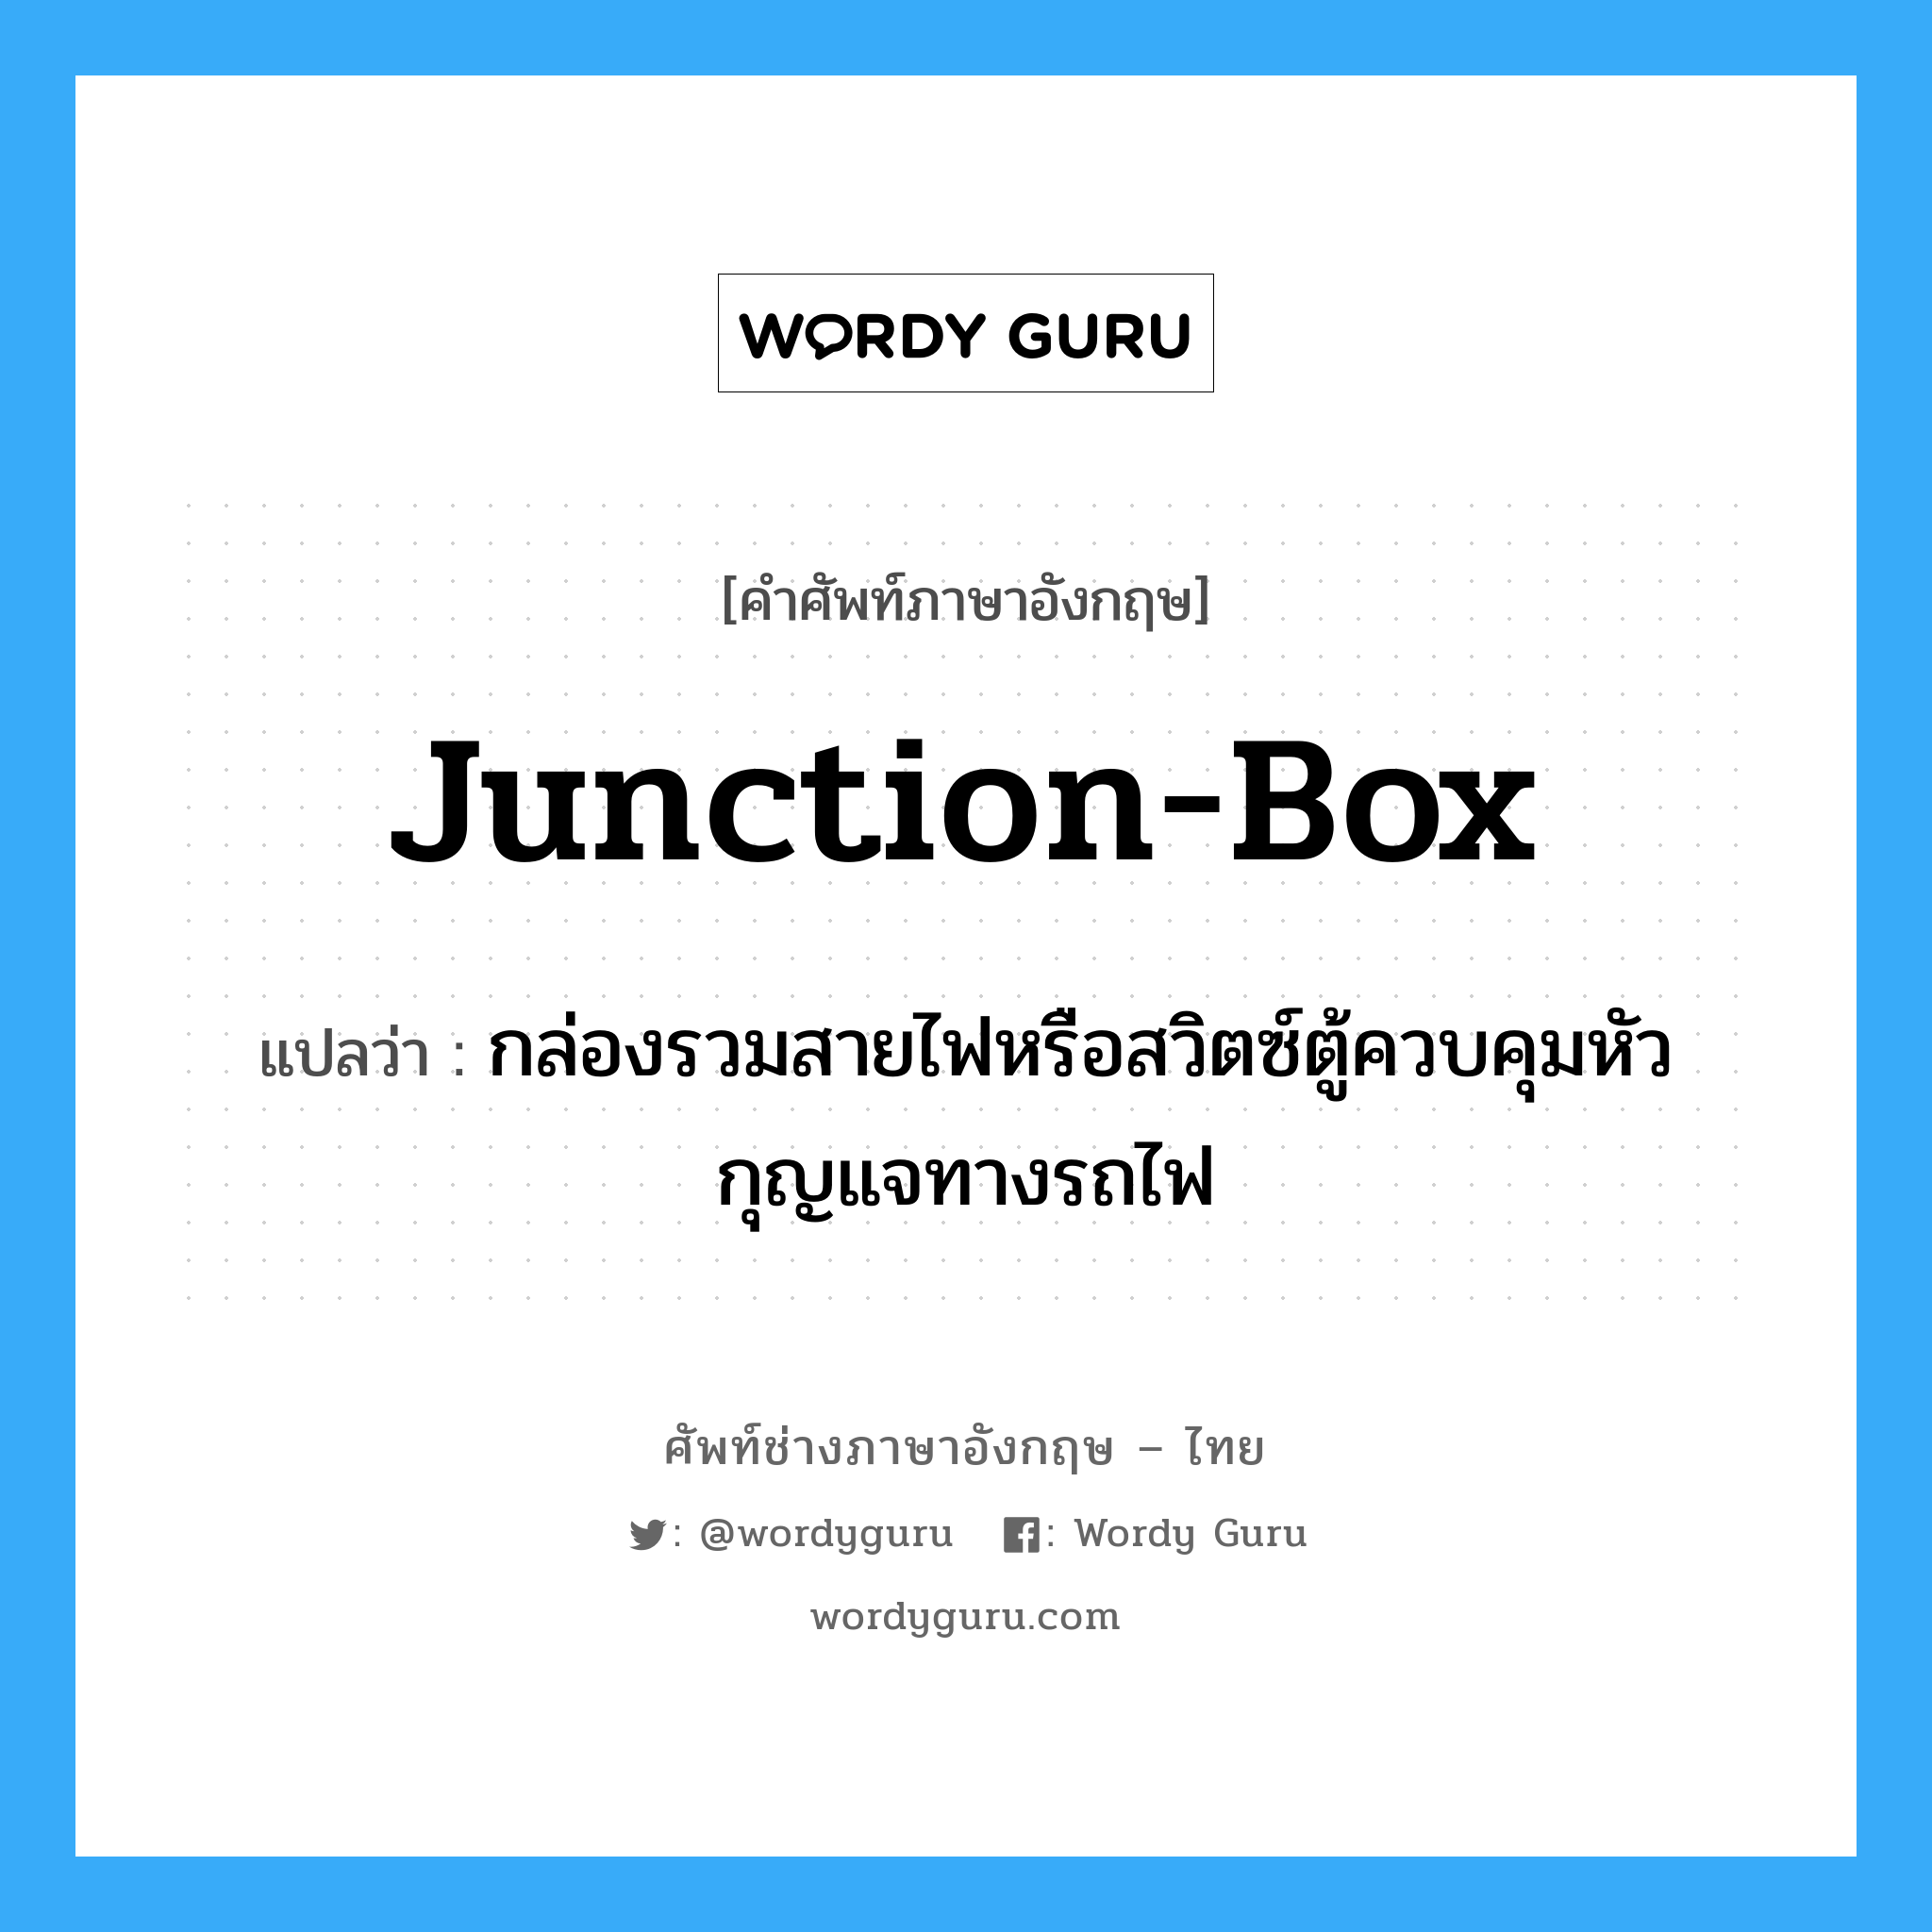 junction-box แปลว่า?, คำศัพท์ช่างภาษาอังกฤษ - ไทย junction-box คำศัพท์ภาษาอังกฤษ junction-box แปลว่า กล่องรวมสายไฟหรือสวิตซ์ตู้ควบคุมหัวกุญแจทางรถไฟ